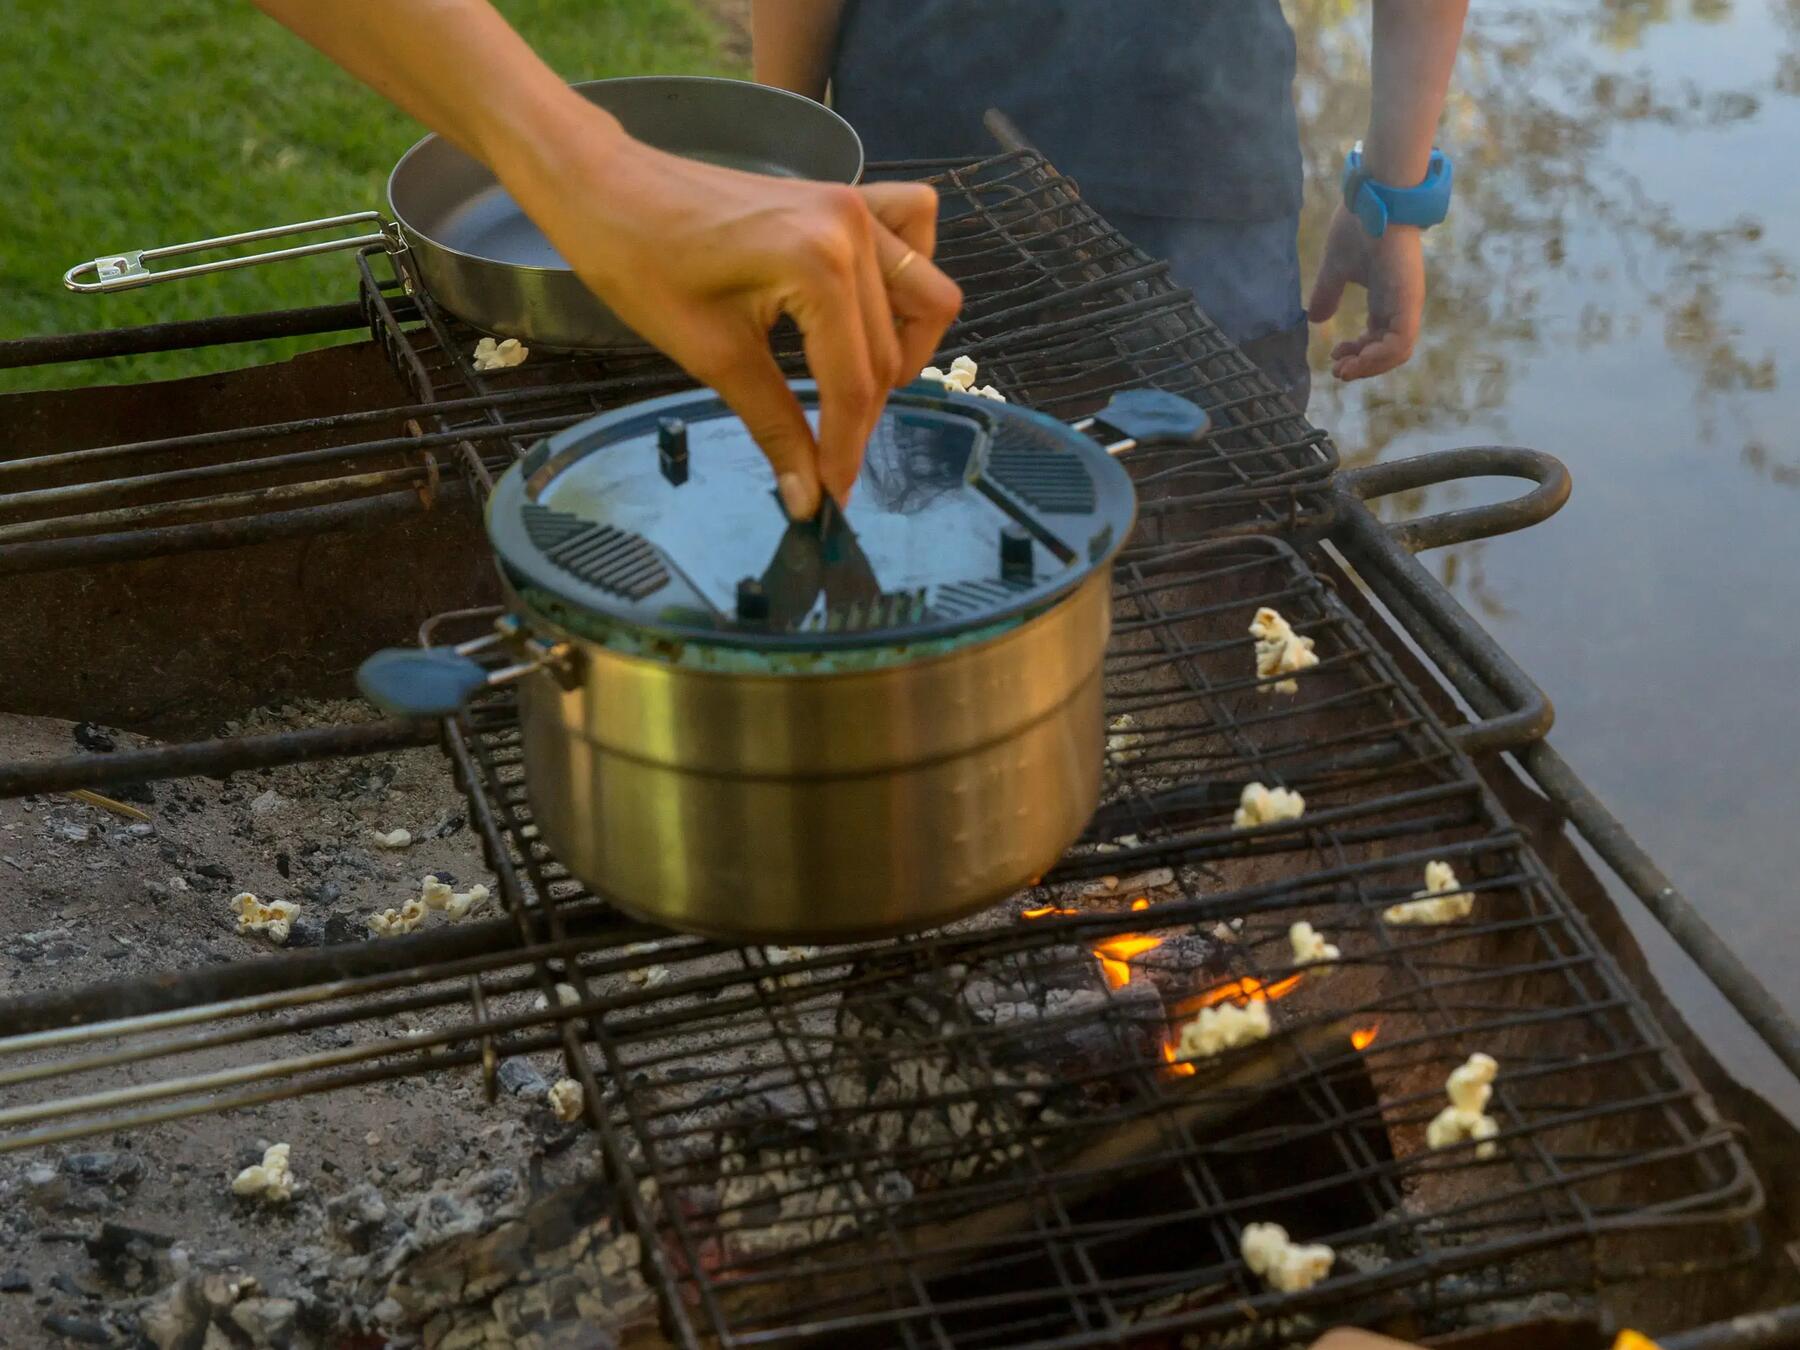 I nostri consigli per cucinare in campeggio